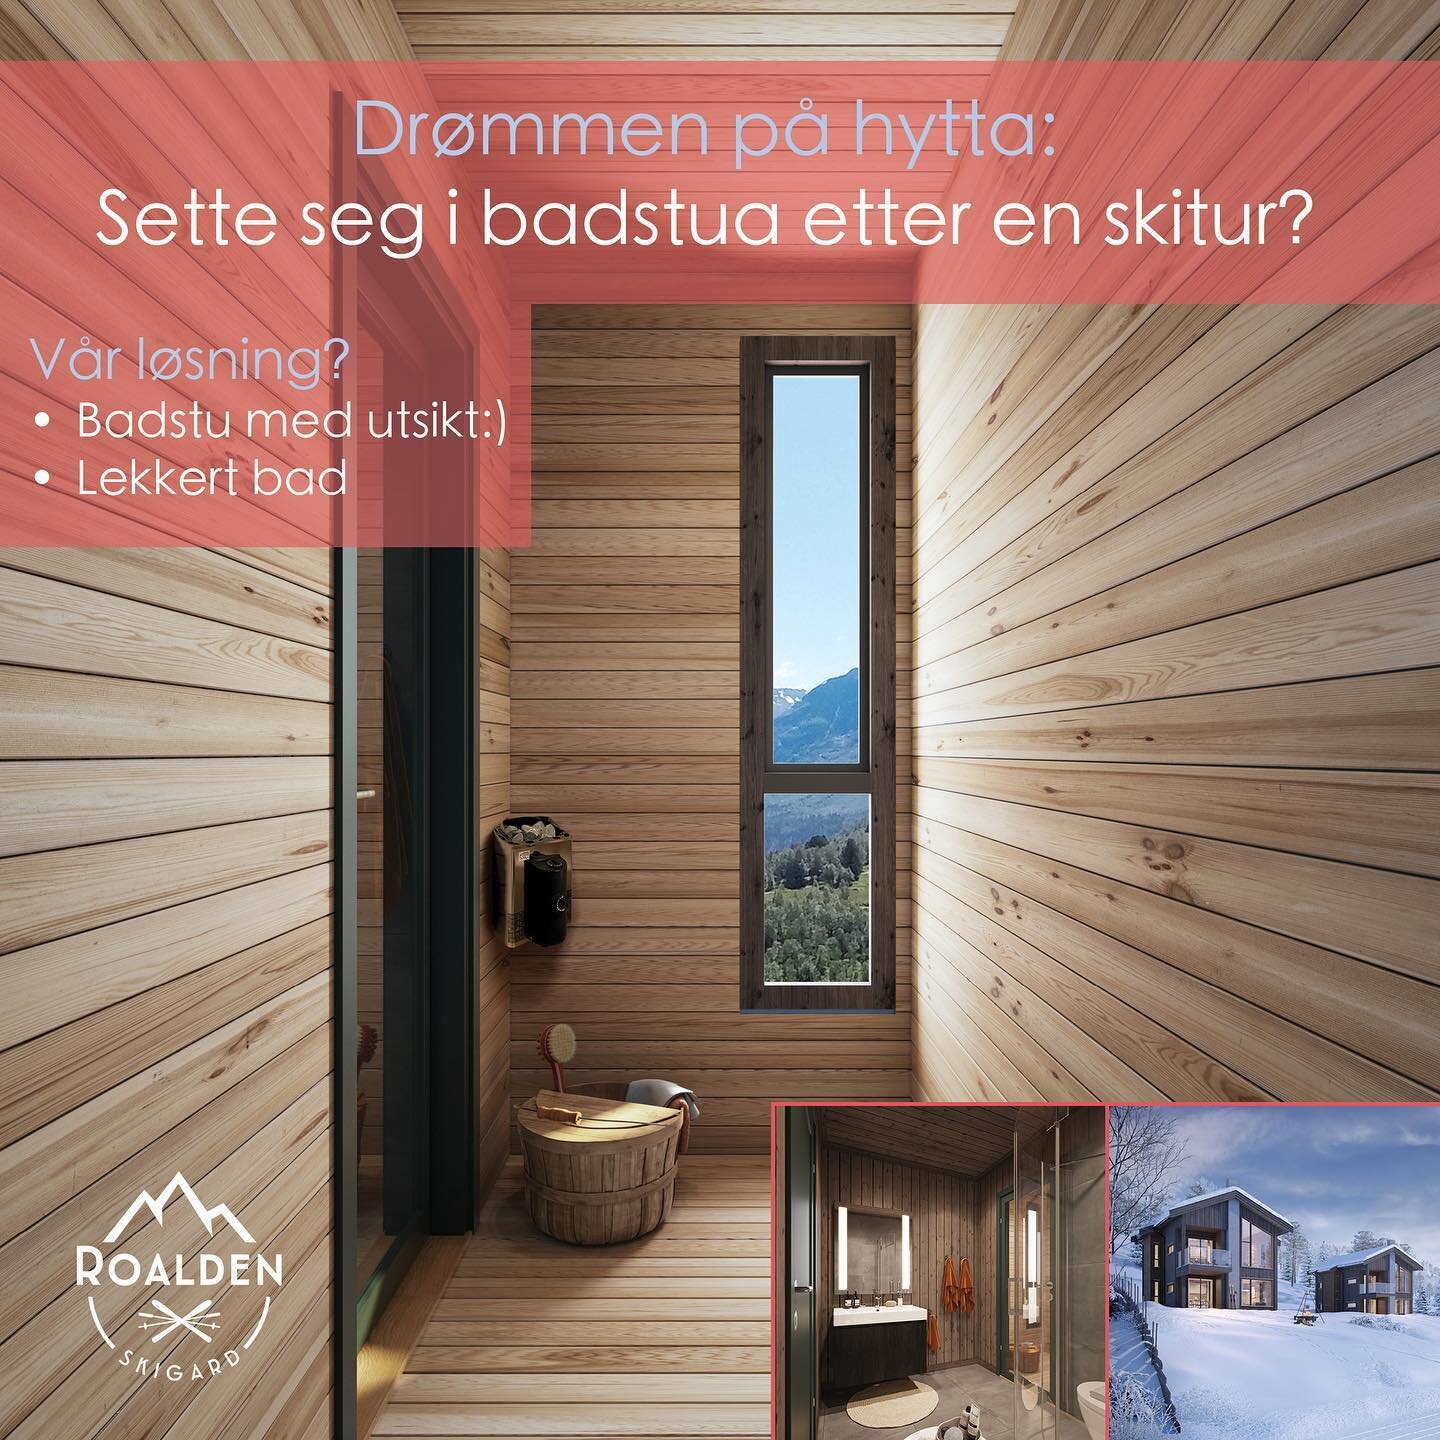 Rett fra skisporet og inn i din egen badstu?😁⛷

#hytteliv #hytteinspirasjon #strandafjellet #sunnm&oslash;rsalpane #hytteinspo #hytte #sunnm&oslash;re #zenm&oslash;re #fjords #norge #mountains